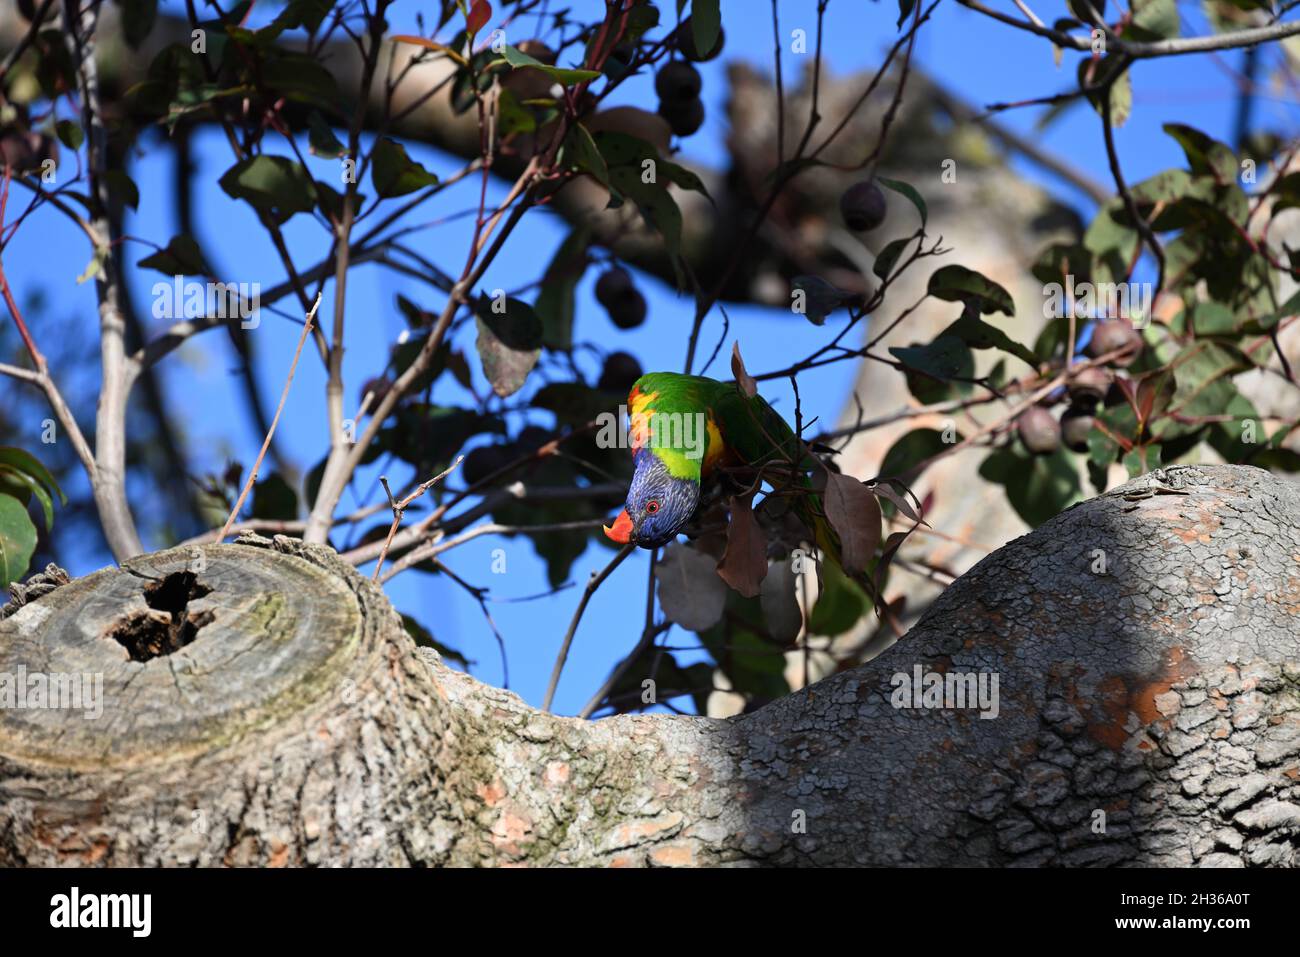 Regenbogenlorikeet in einem Kaugummibaum, den Kopf verstellt, um eine bessere Sicht zu erhalten Stockfoto